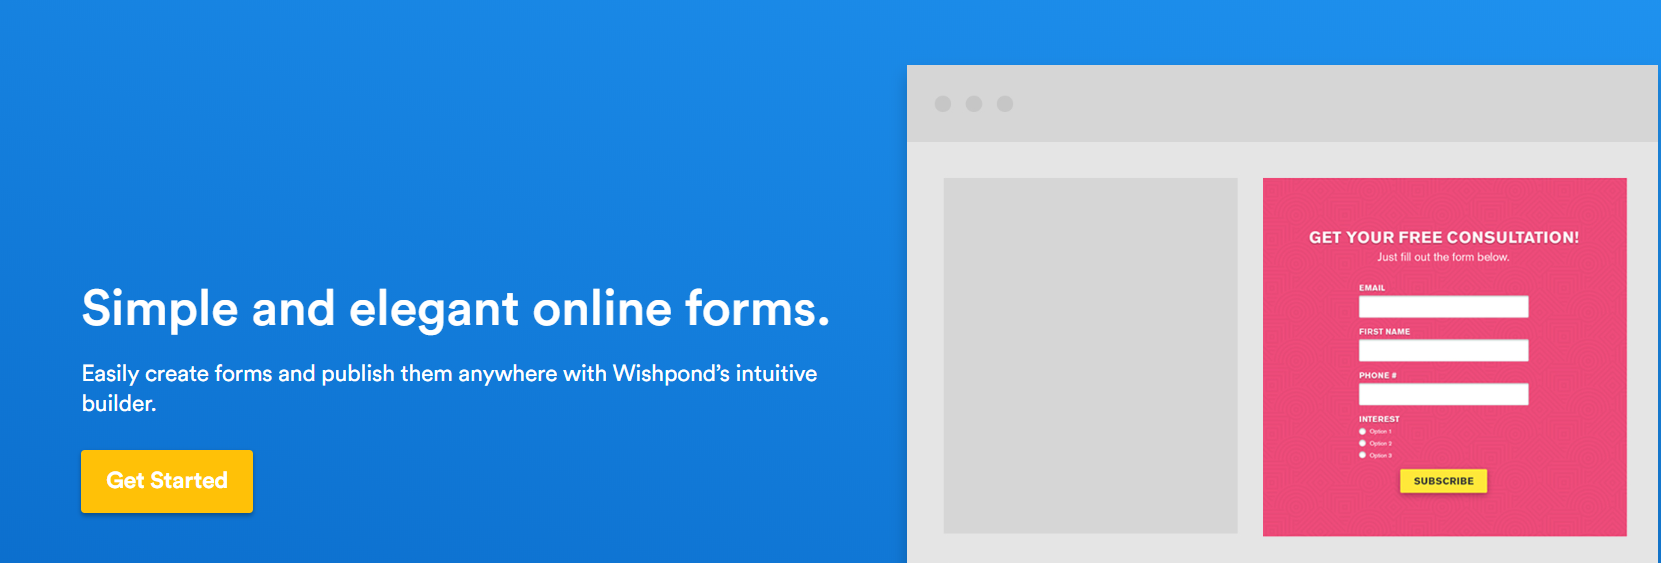 Wishpond - Easy Online Form Builder 